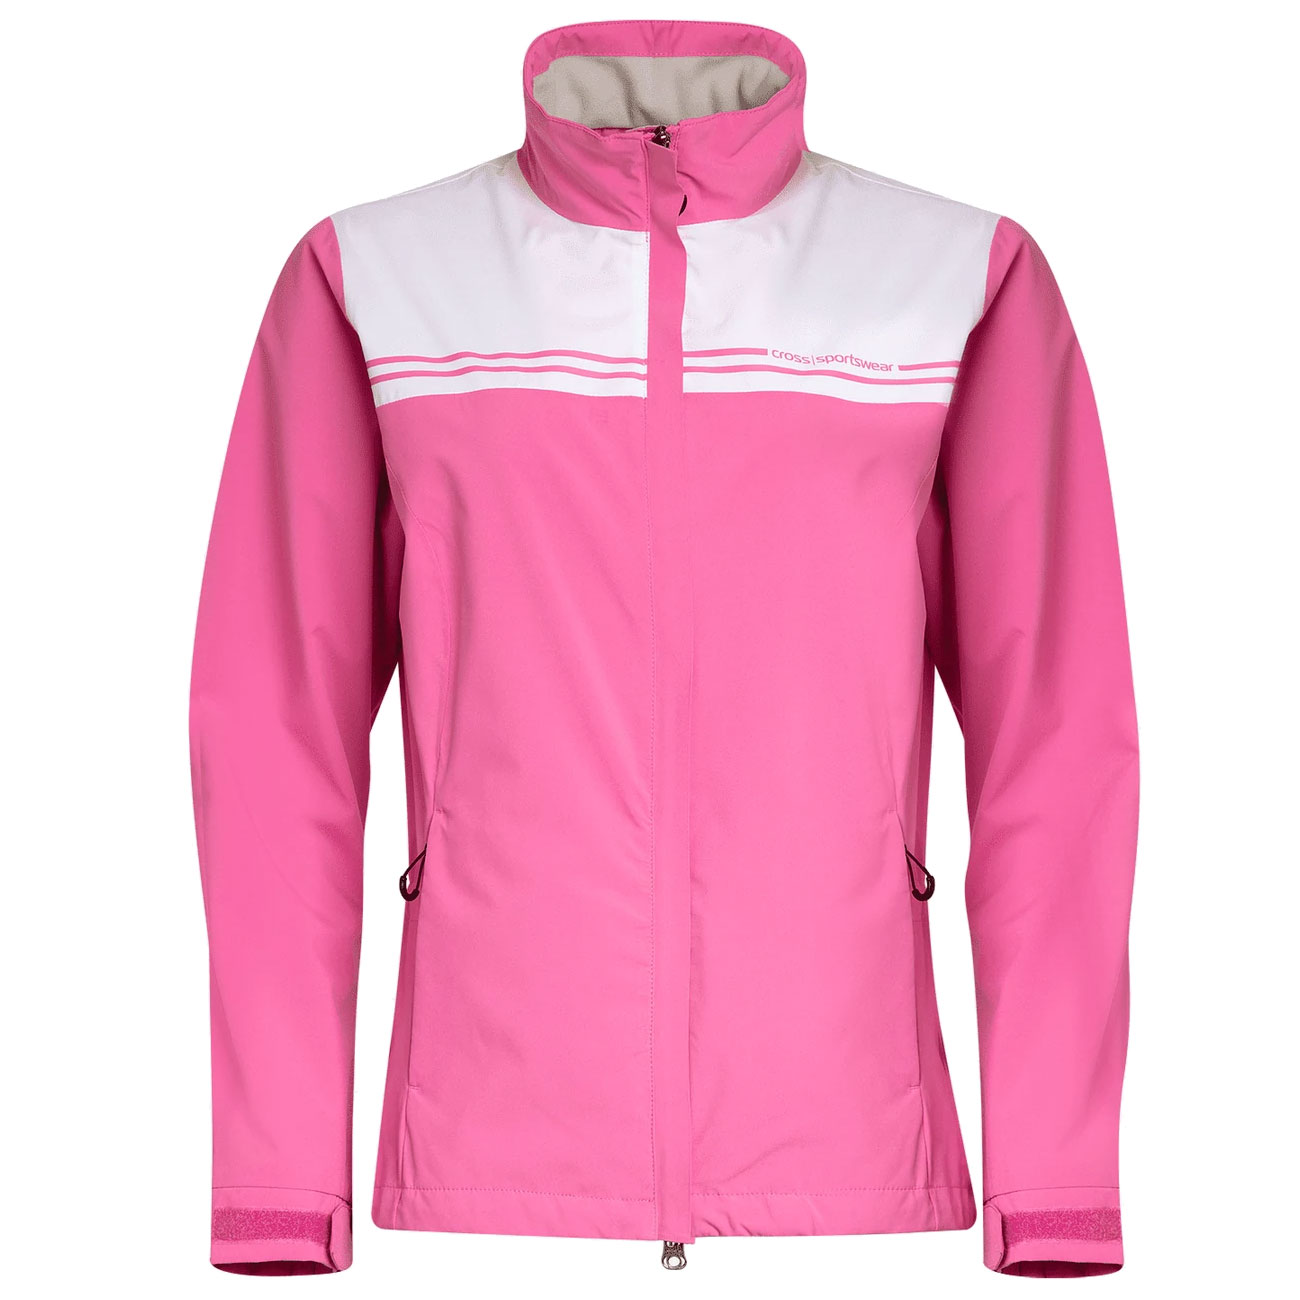 'Cross W Cloud 2022 Damen Golf Regenjacke pink' von Cross